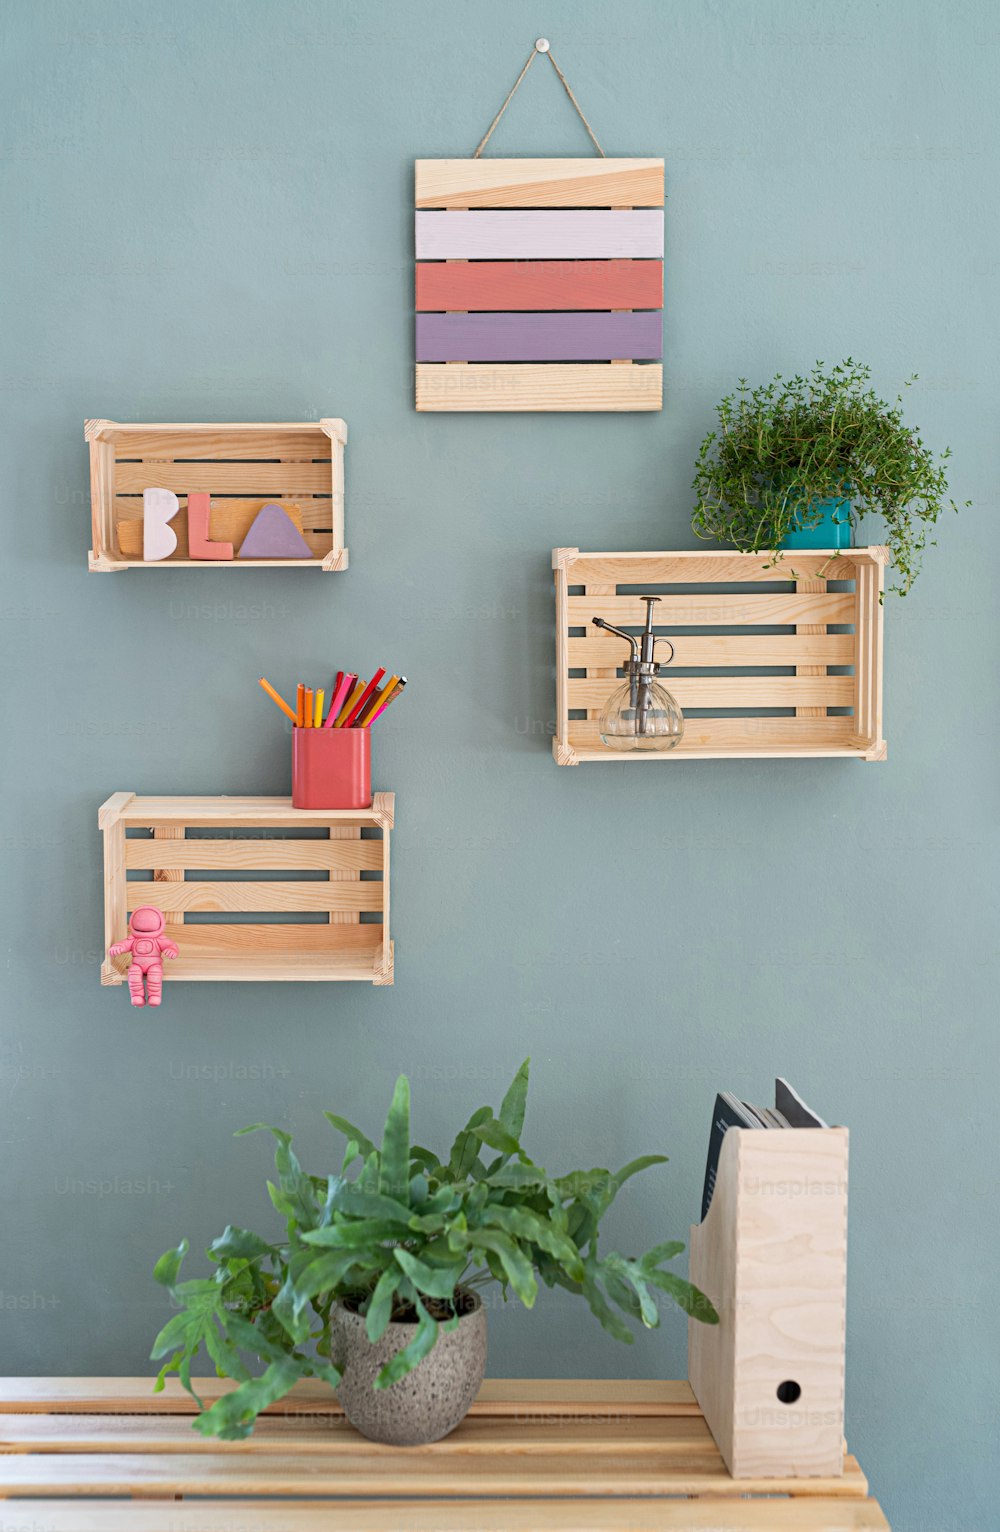 Estanterías de madera con decoraciones en la pared, un concepto de decoración natural.